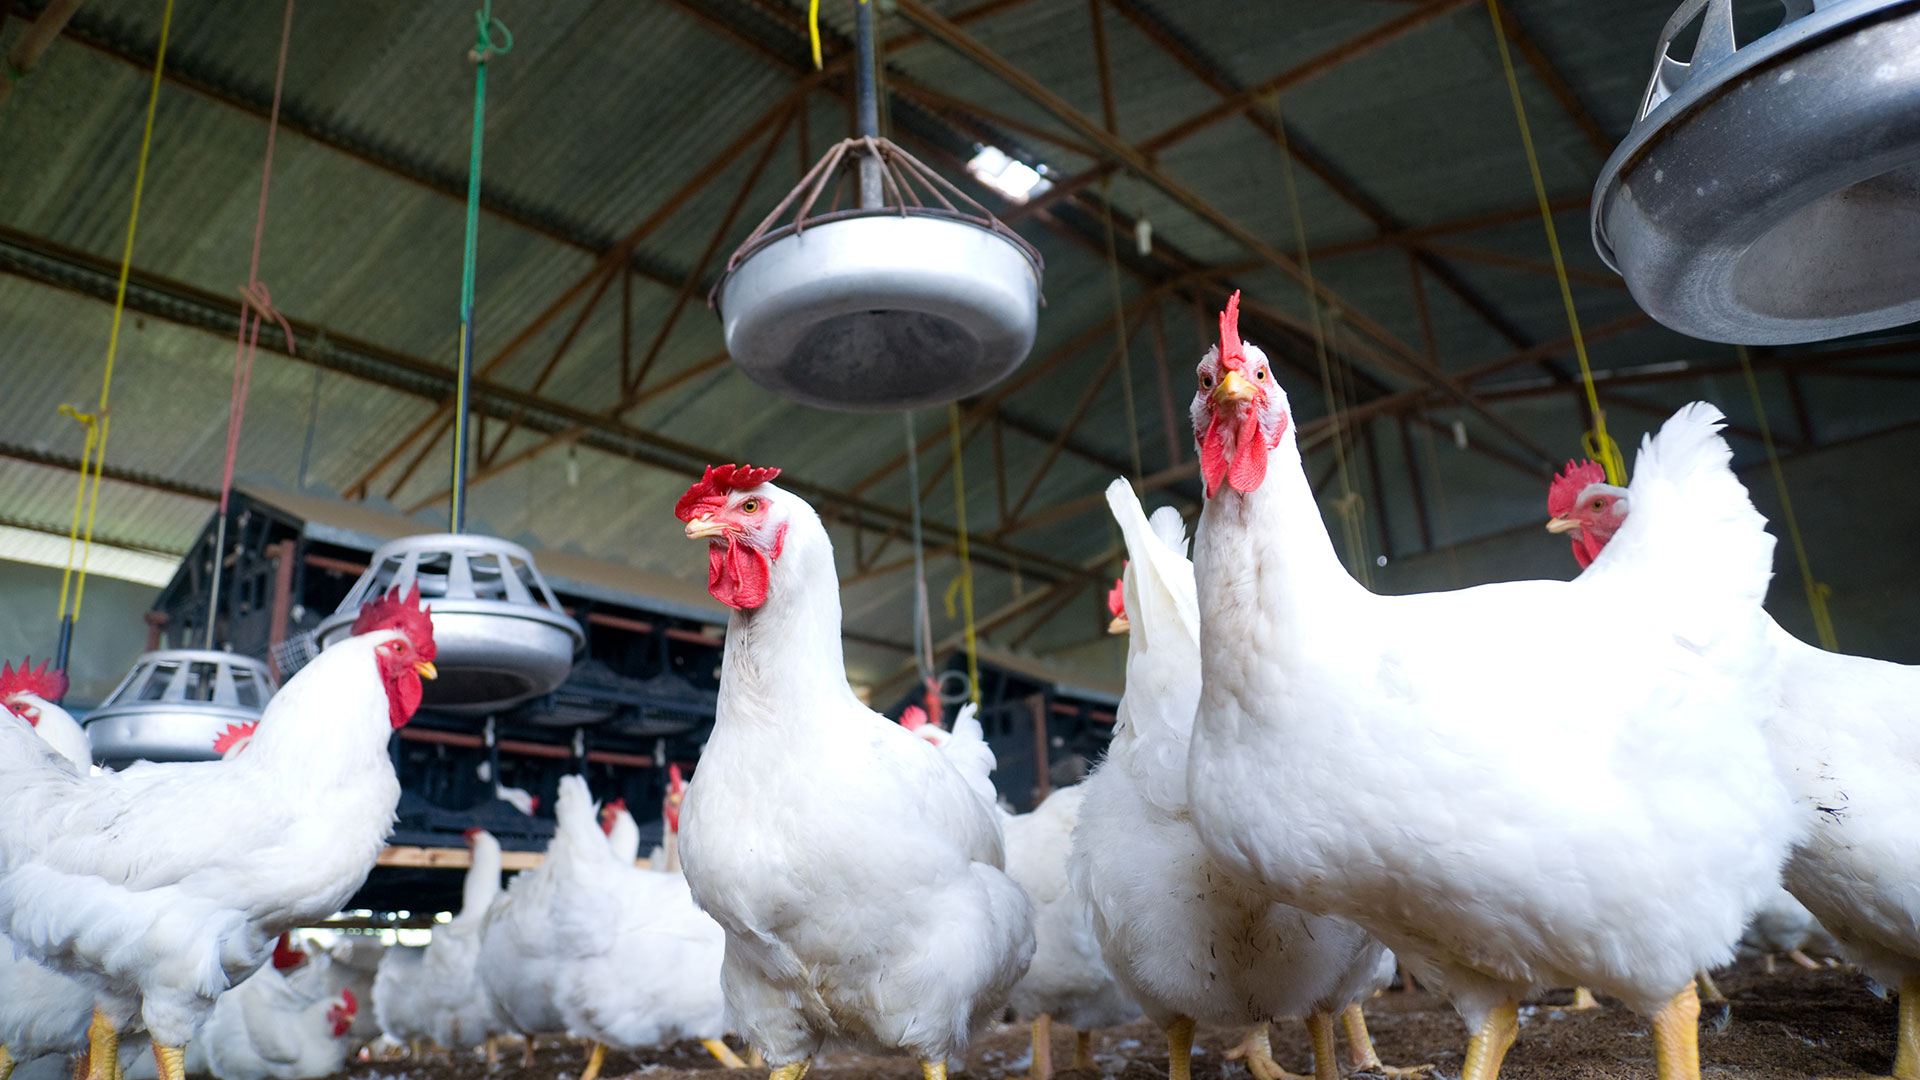 El Senasa confirmó tres casos positivos de gripe aviar en granjas comerciales